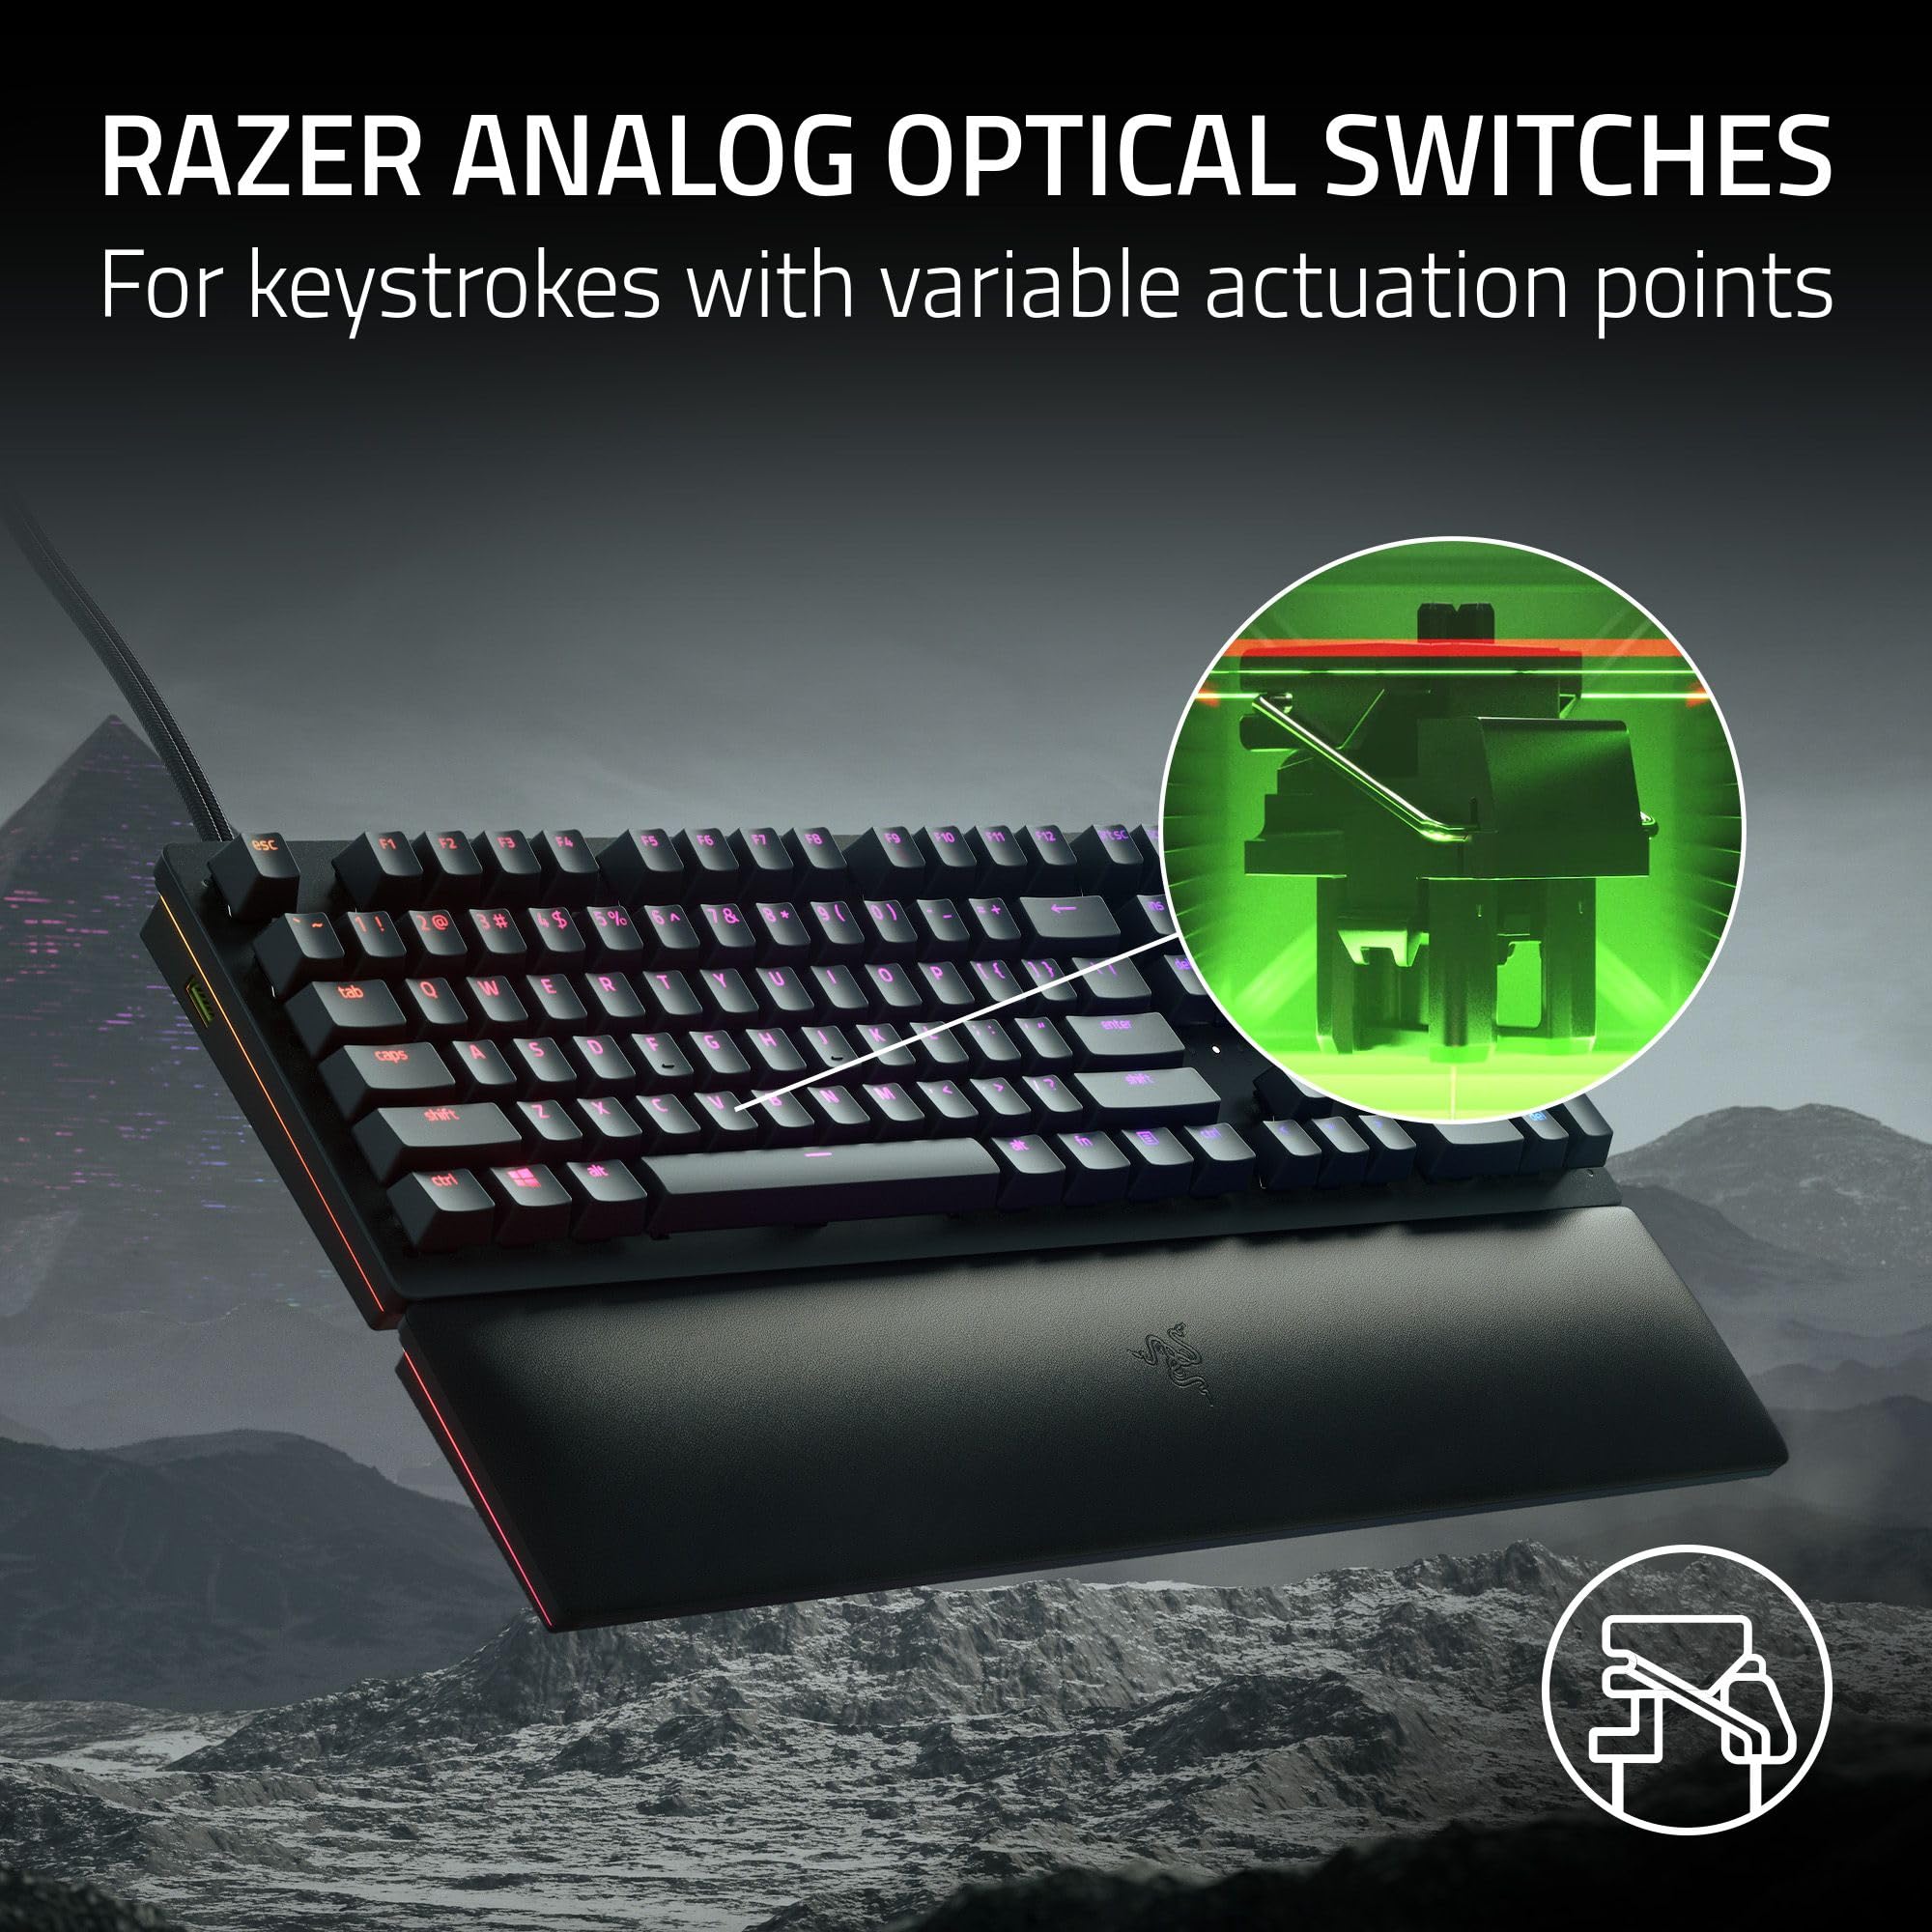 Razer Huntsman V2 (Analog Switch) - Optical Gaming Keyboard with Near-Zero Input Latency (Analog Optical-Mechanical Switches, Doubleshot PBT Keycaps, Detachable USB-C Cable) UK Layout | Black